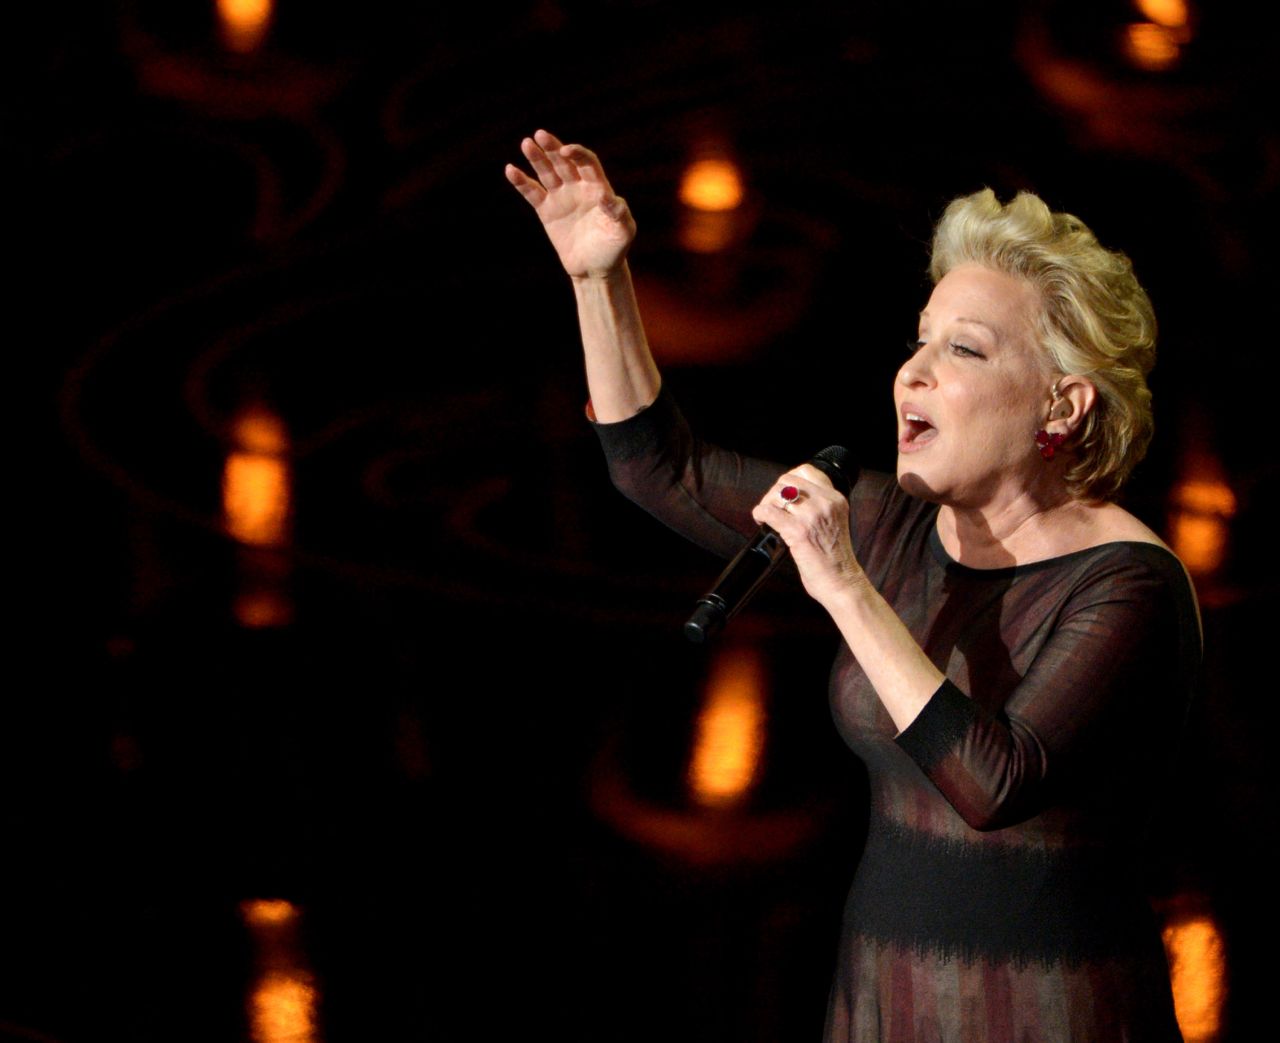 Bette Midler sings "Wind Beneath My Wings" during the "In Memoriam" segment.